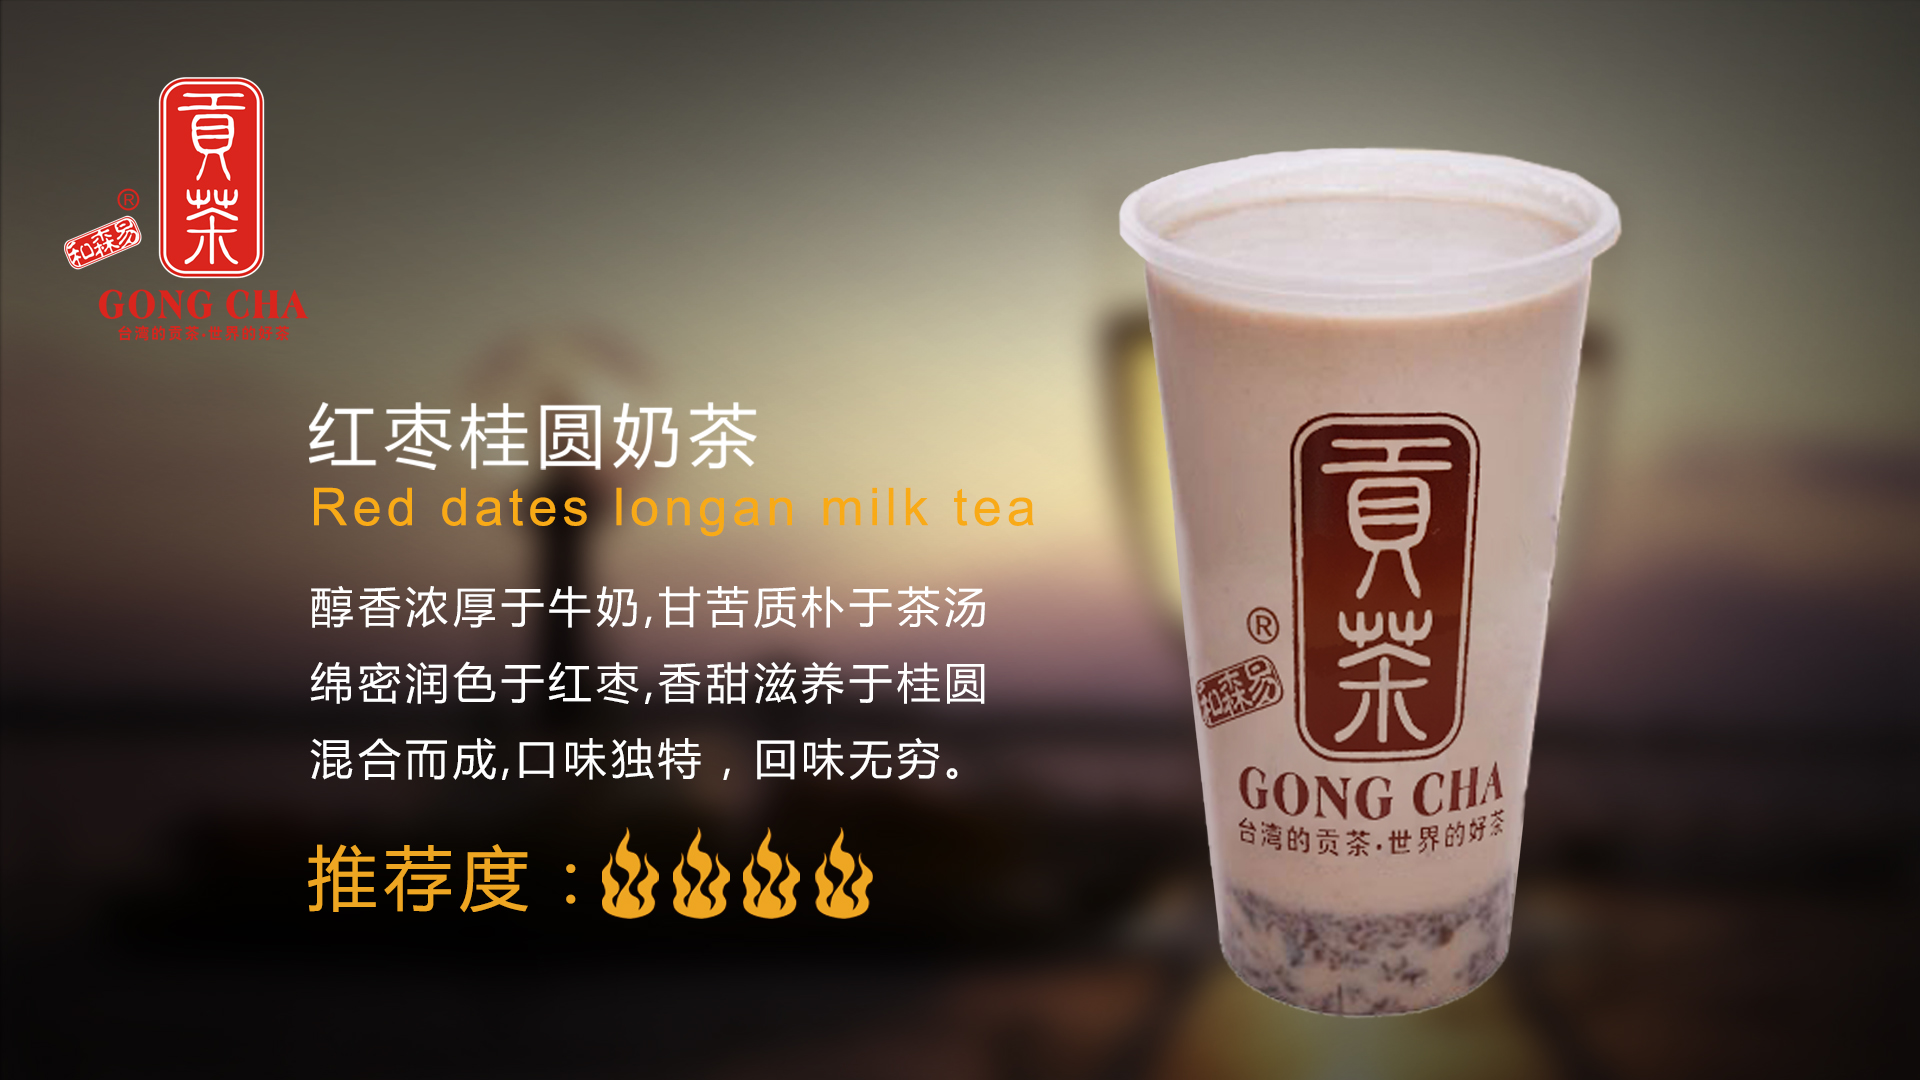 市场中贡茶加盟品牌这么多和森易贡茶为什么能够如此独特!_1